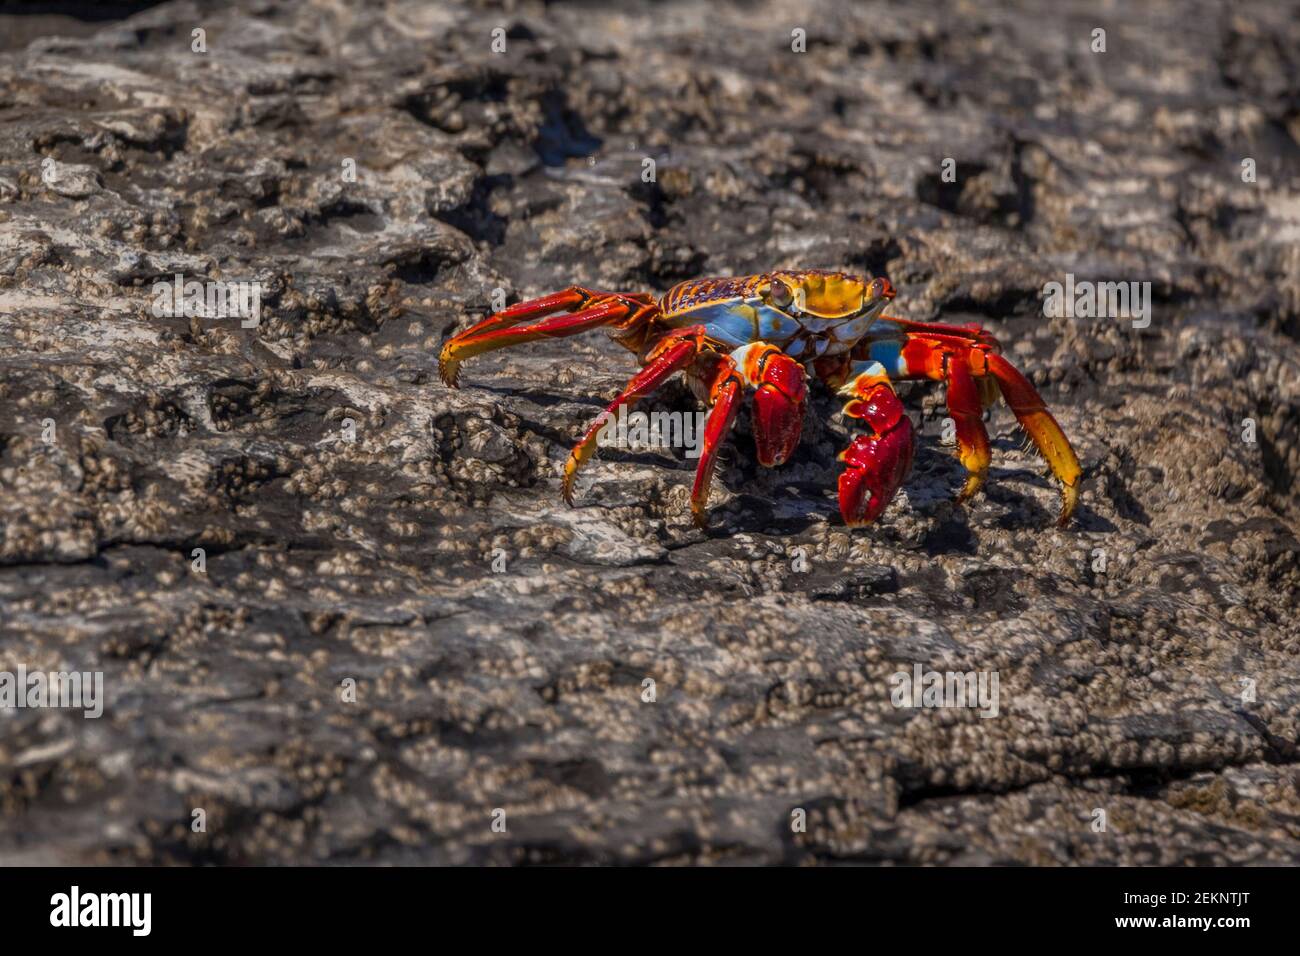 Crabe rouge coloré (Grapsus) avec un beau contraste de couleurs rouge, bleu, orange et jaune sur la côte Pacifique de Baja California sur Banque D'Images